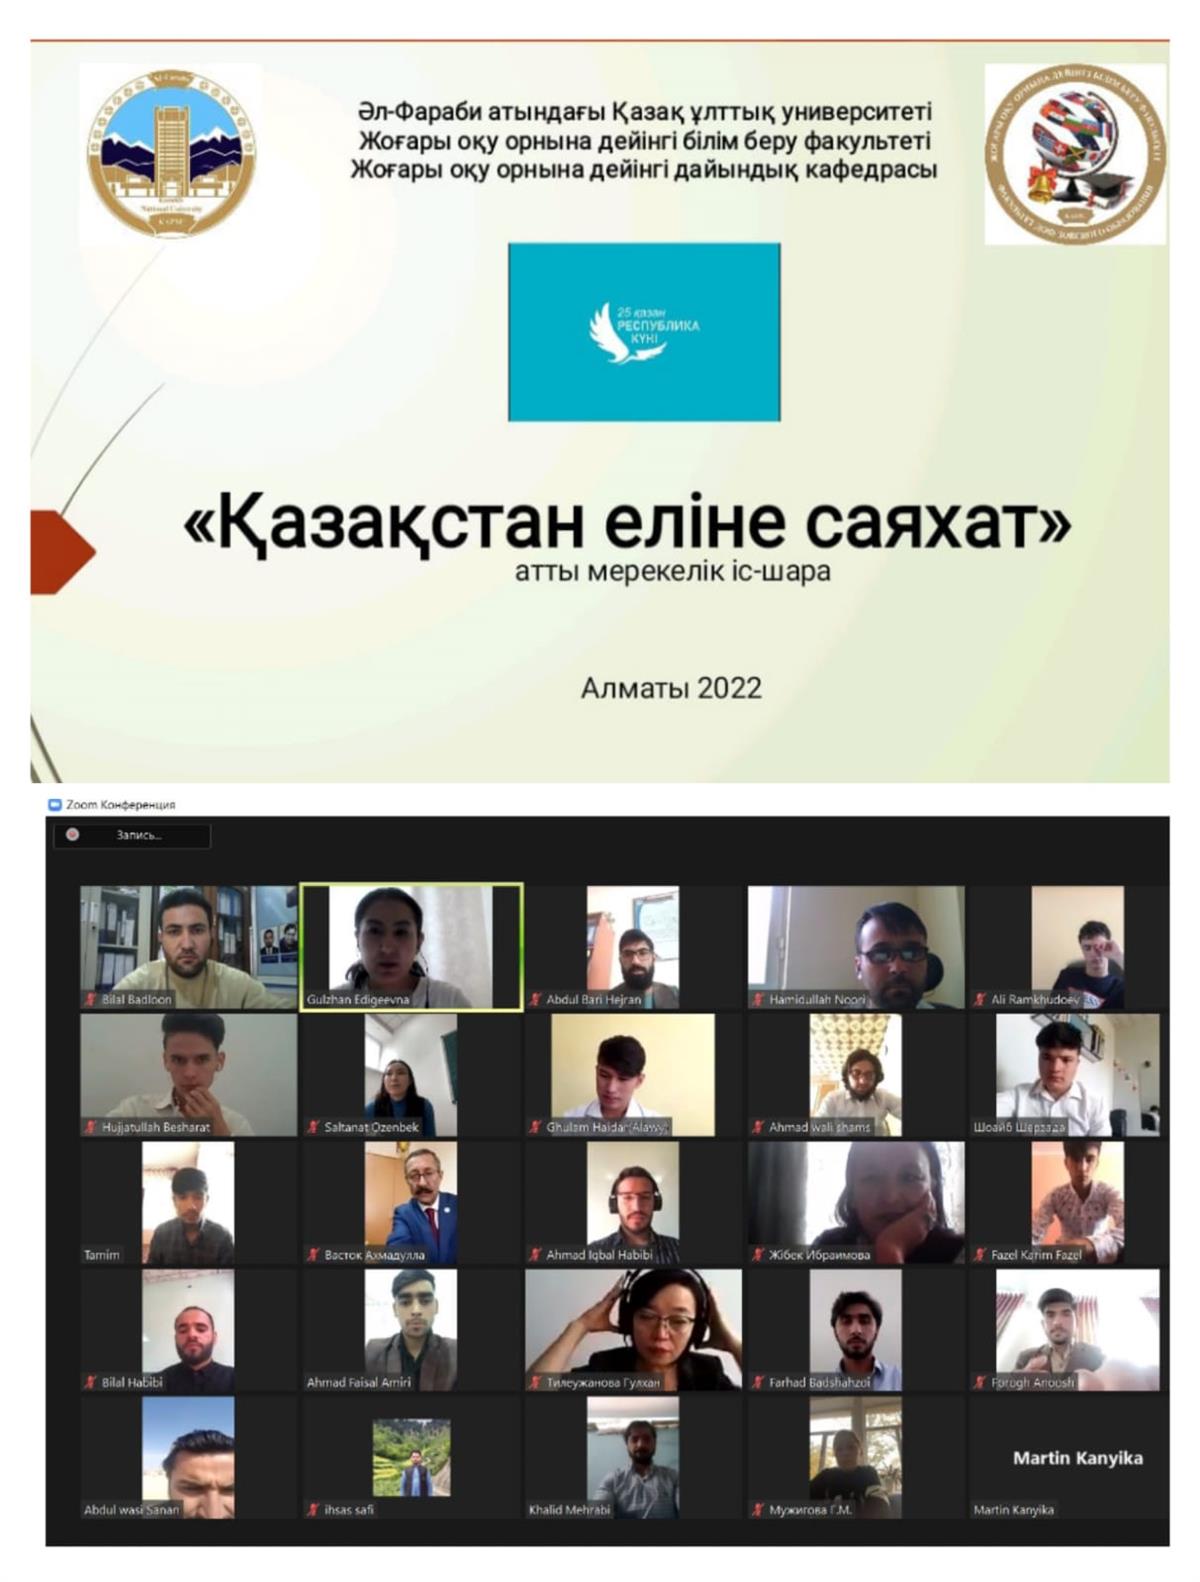 Open curatorial hour "JOURNEY TO KAZAKHSTAN"